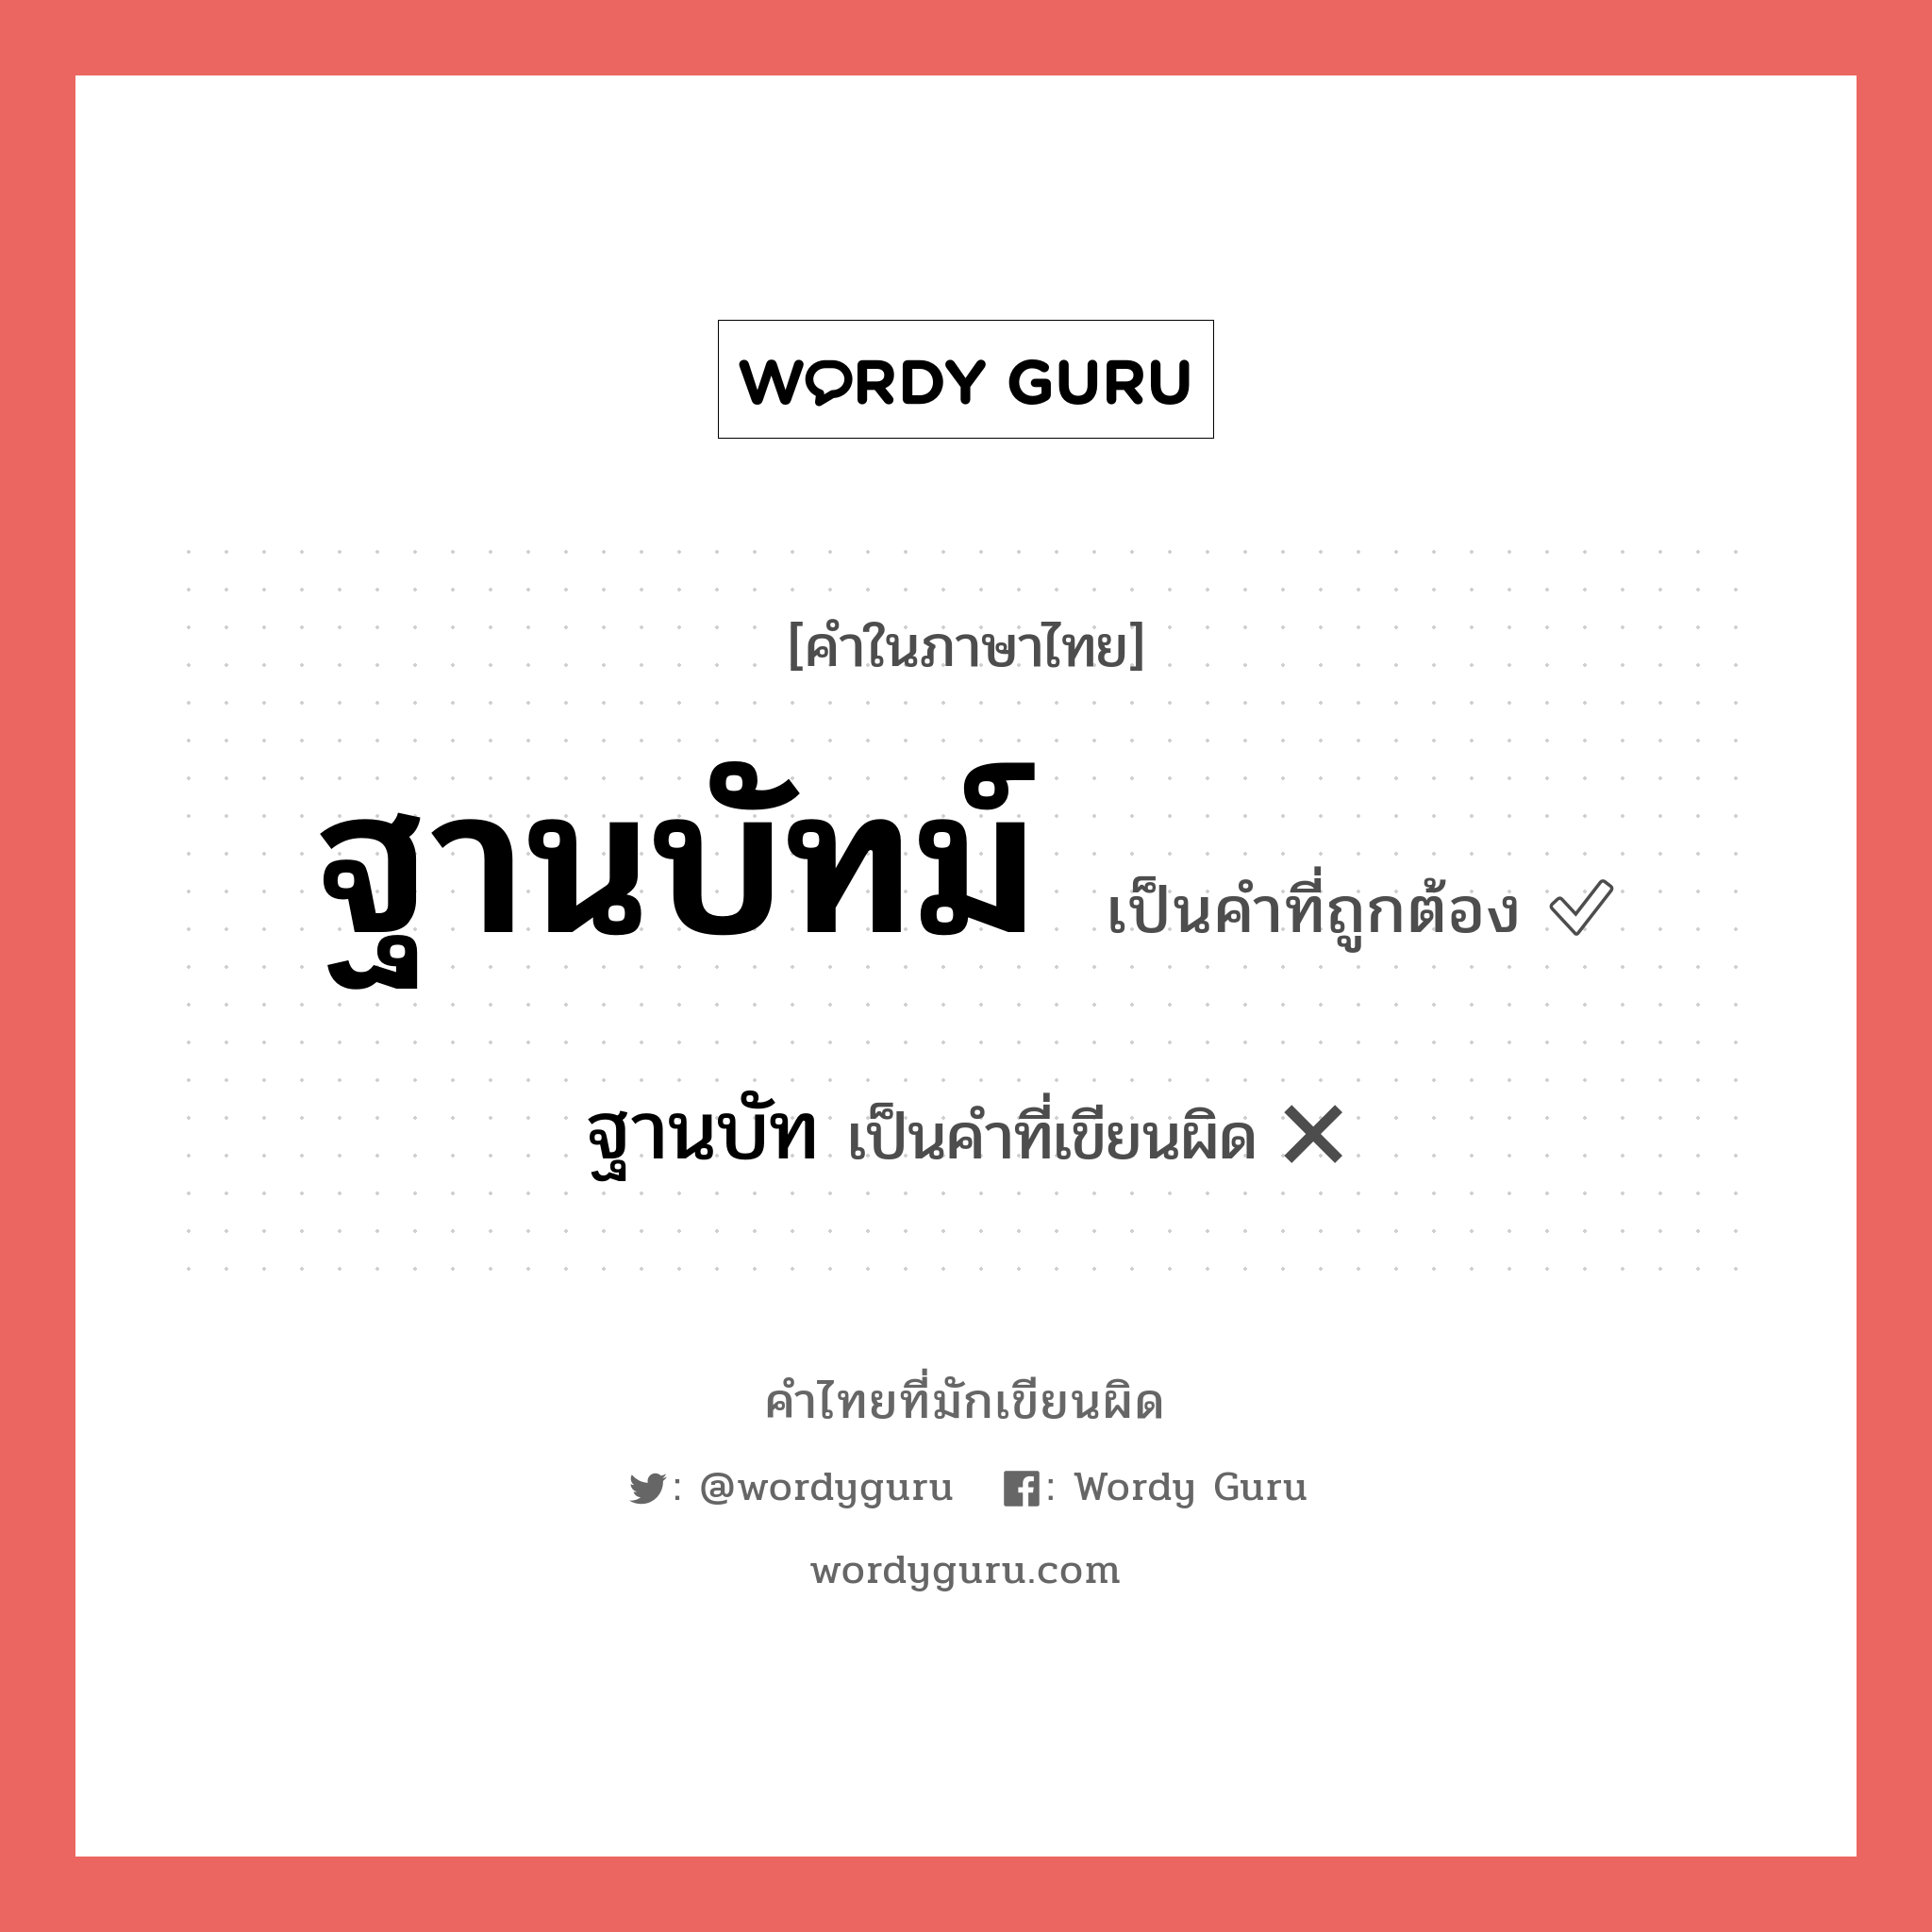 ฐานบัทม์ หรือ ฐานบัท เขียนยังไง? คำไหนเขียนถูก?, คำในภาษาไทยที่มักเขียนผิด ฐานบัทม์ คำที่ผิด ❌ ฐานบัท